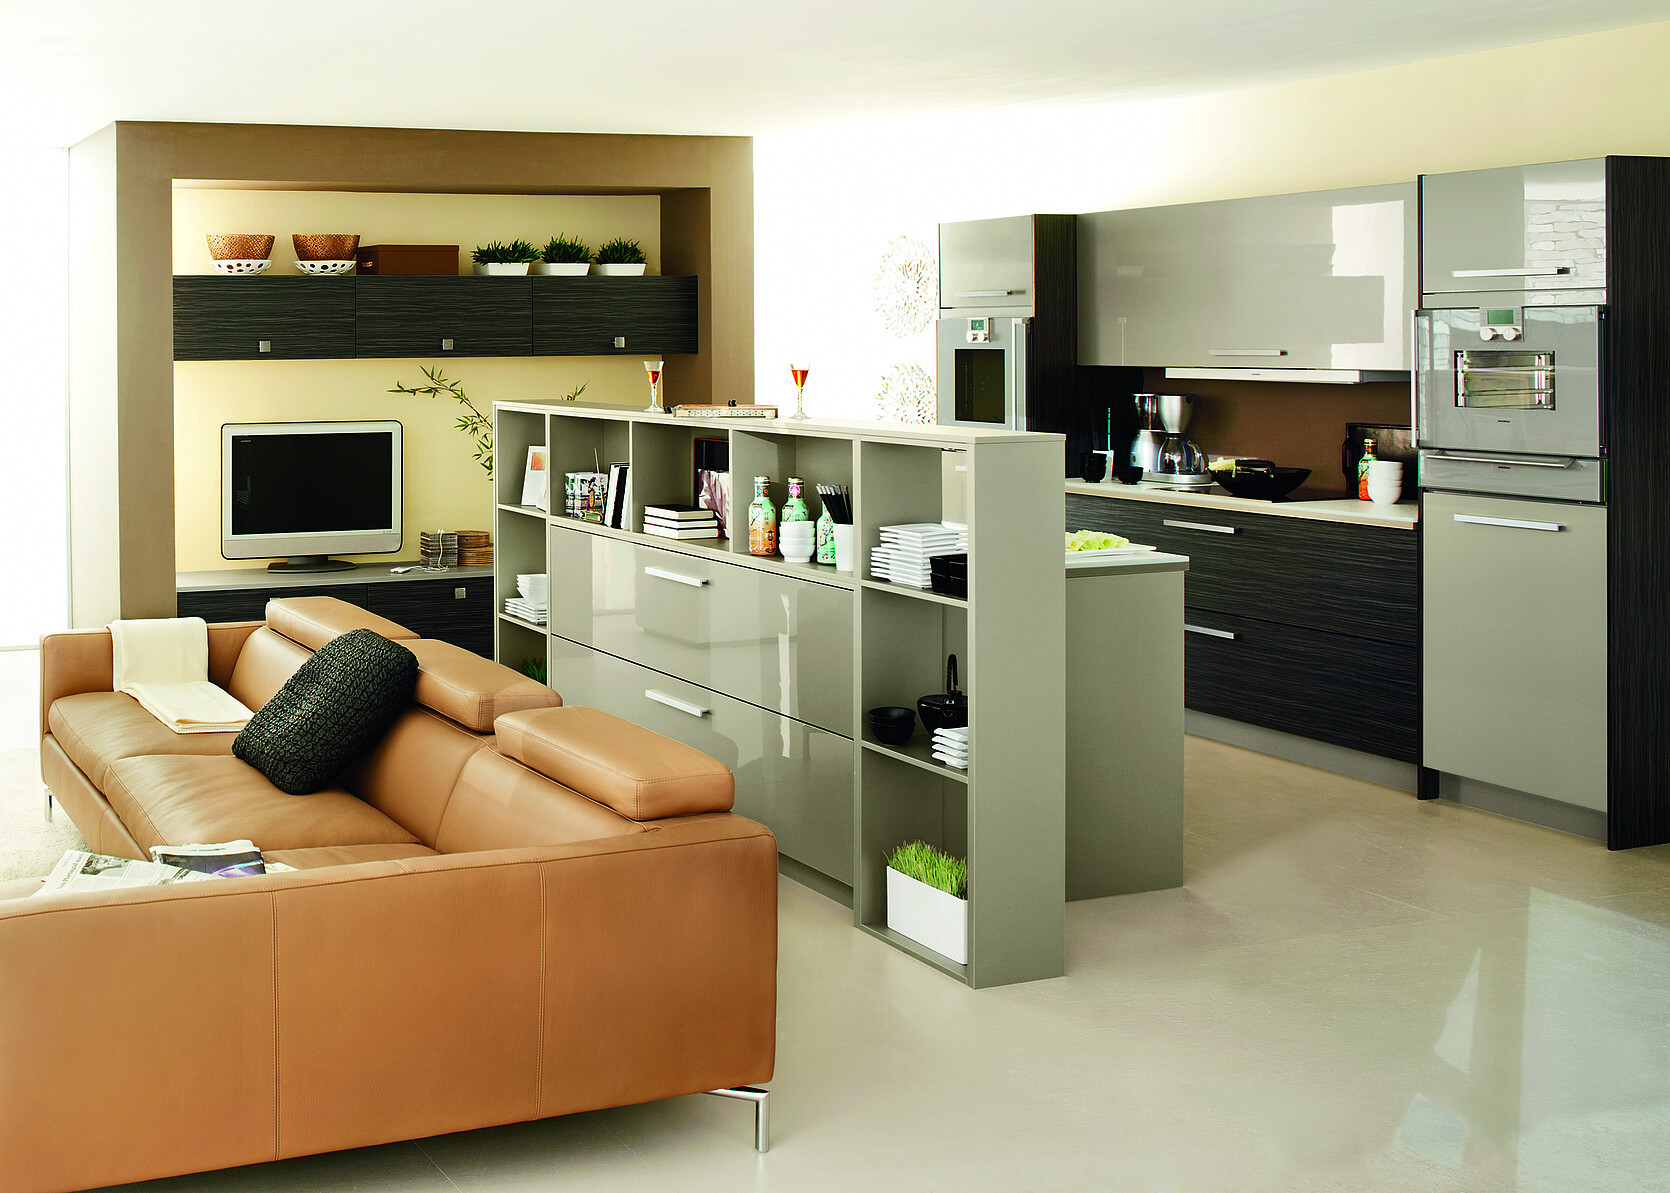 Offene Küche Mit Wohnzimmer: Einrichtungstipps within Küche Wohnzimmer